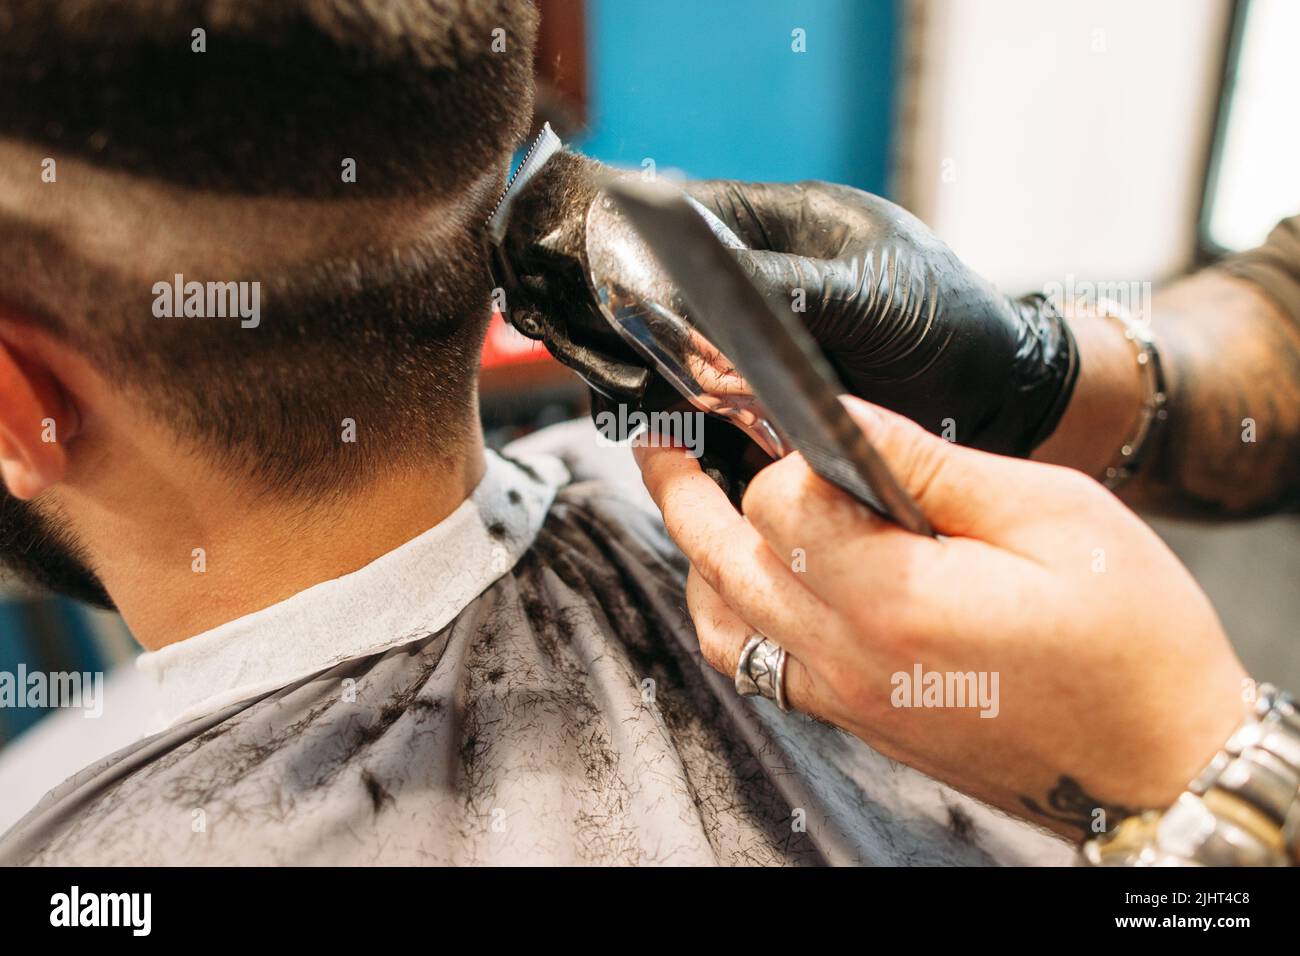 Ein Mann, der in der Nähe des Friseursalons einen lockigen Haarschnitt macht Stockfoto